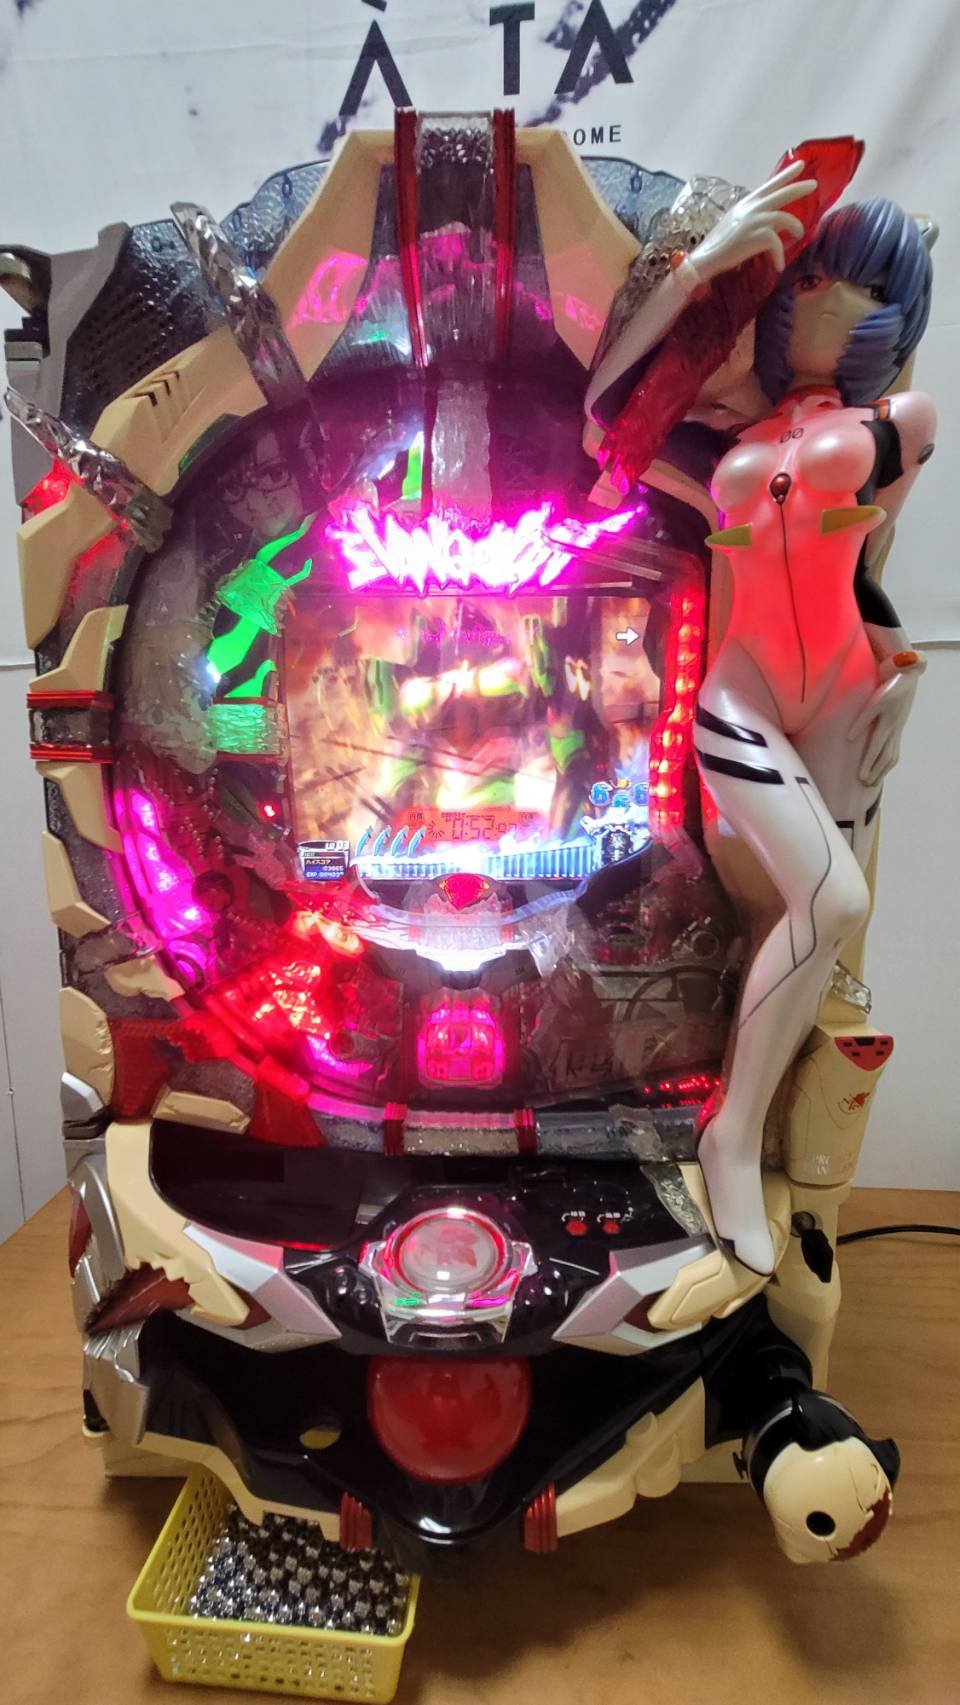 柯先生日本原裝小鋼珠柏青哥2013 福音戰士8 高級戰鬥 大型家用電玩機台打檯子遊藝場的刺激超酷炫個人遊戲室電動間